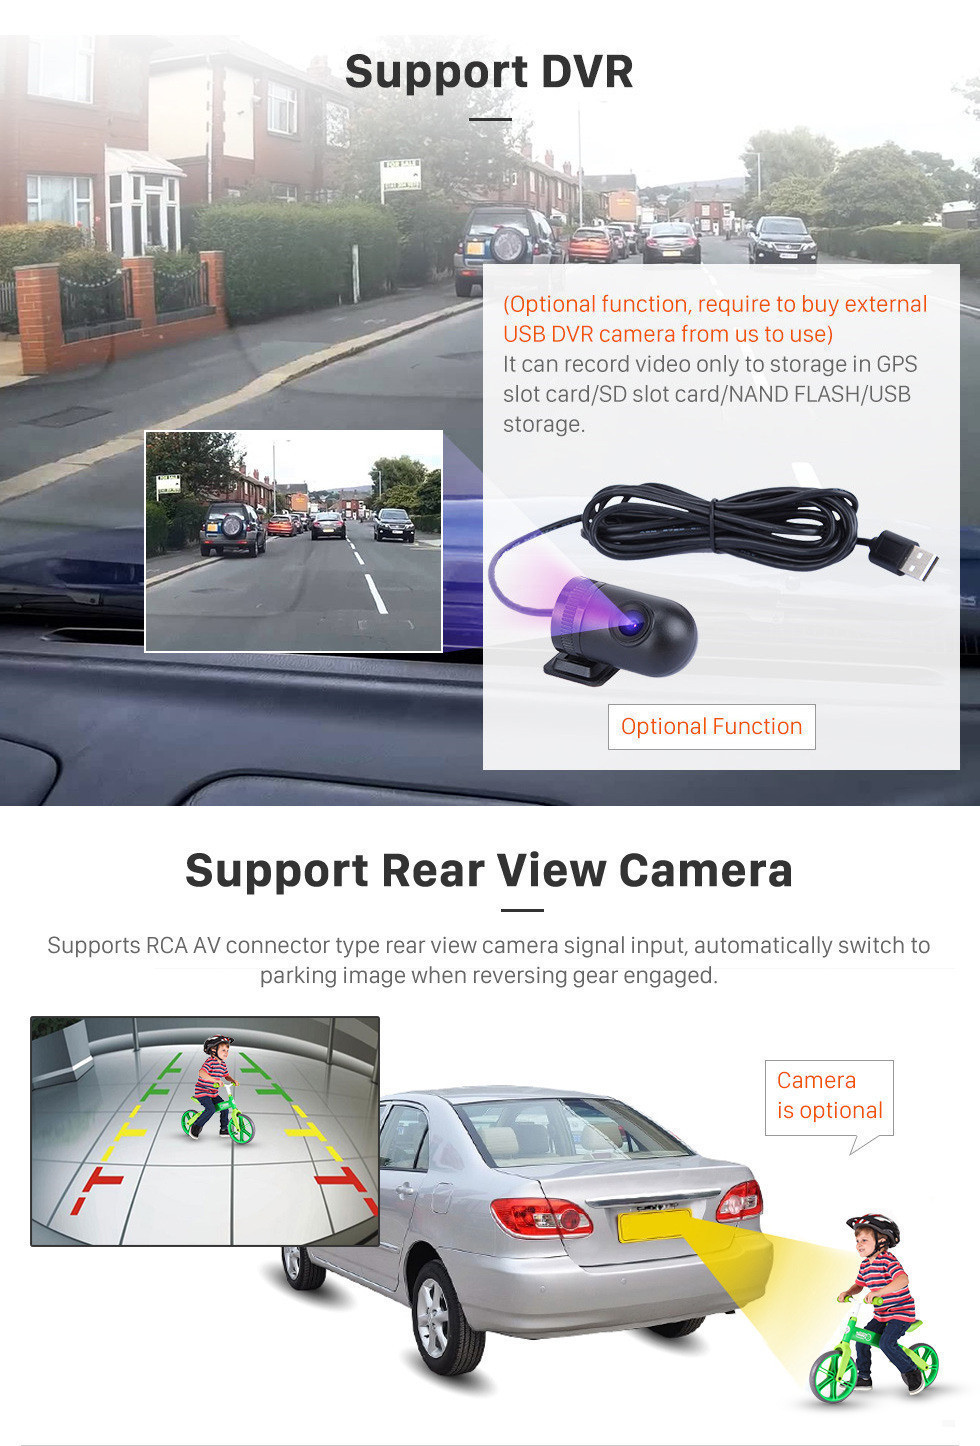 Seicane Pour 2014 2015 2016 2017 Mitsubishi Outlander 10.1 pouces Android 11.0 HD Écran tactile GPS Système de navigation Bluetooth Wifi AUX SWC Carplay USB support DVR 1080P Vidéo TPMS